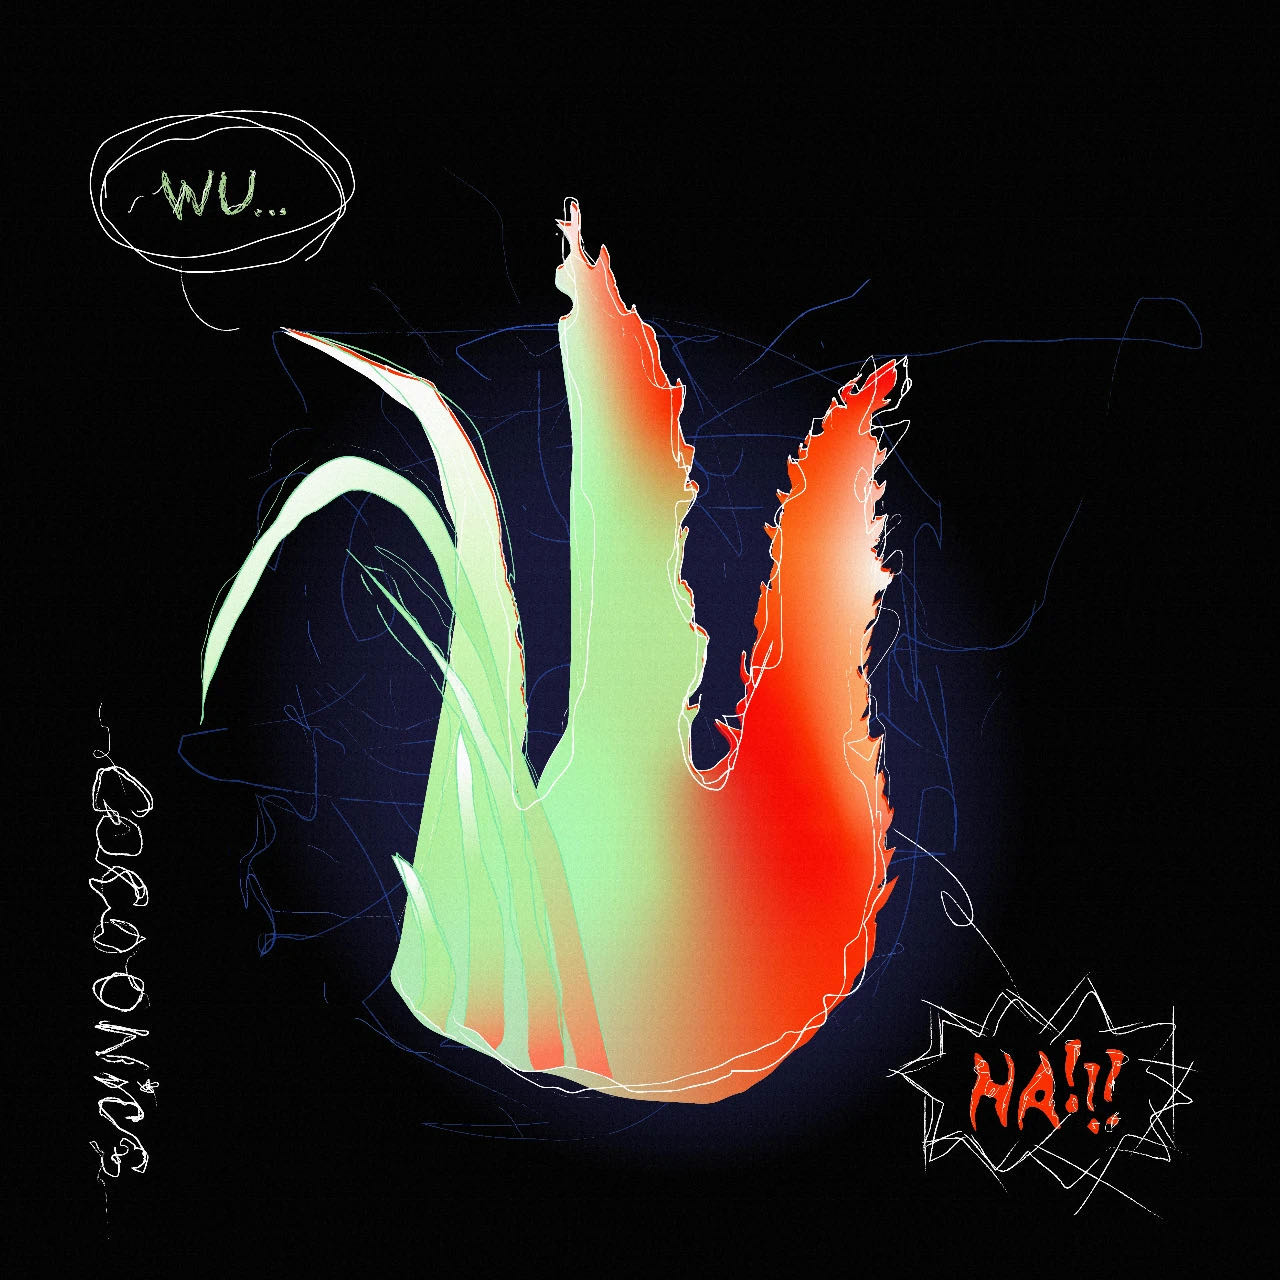 音乐制作人 Cocoonics 最新 EP《wu…/HA!》正式上线